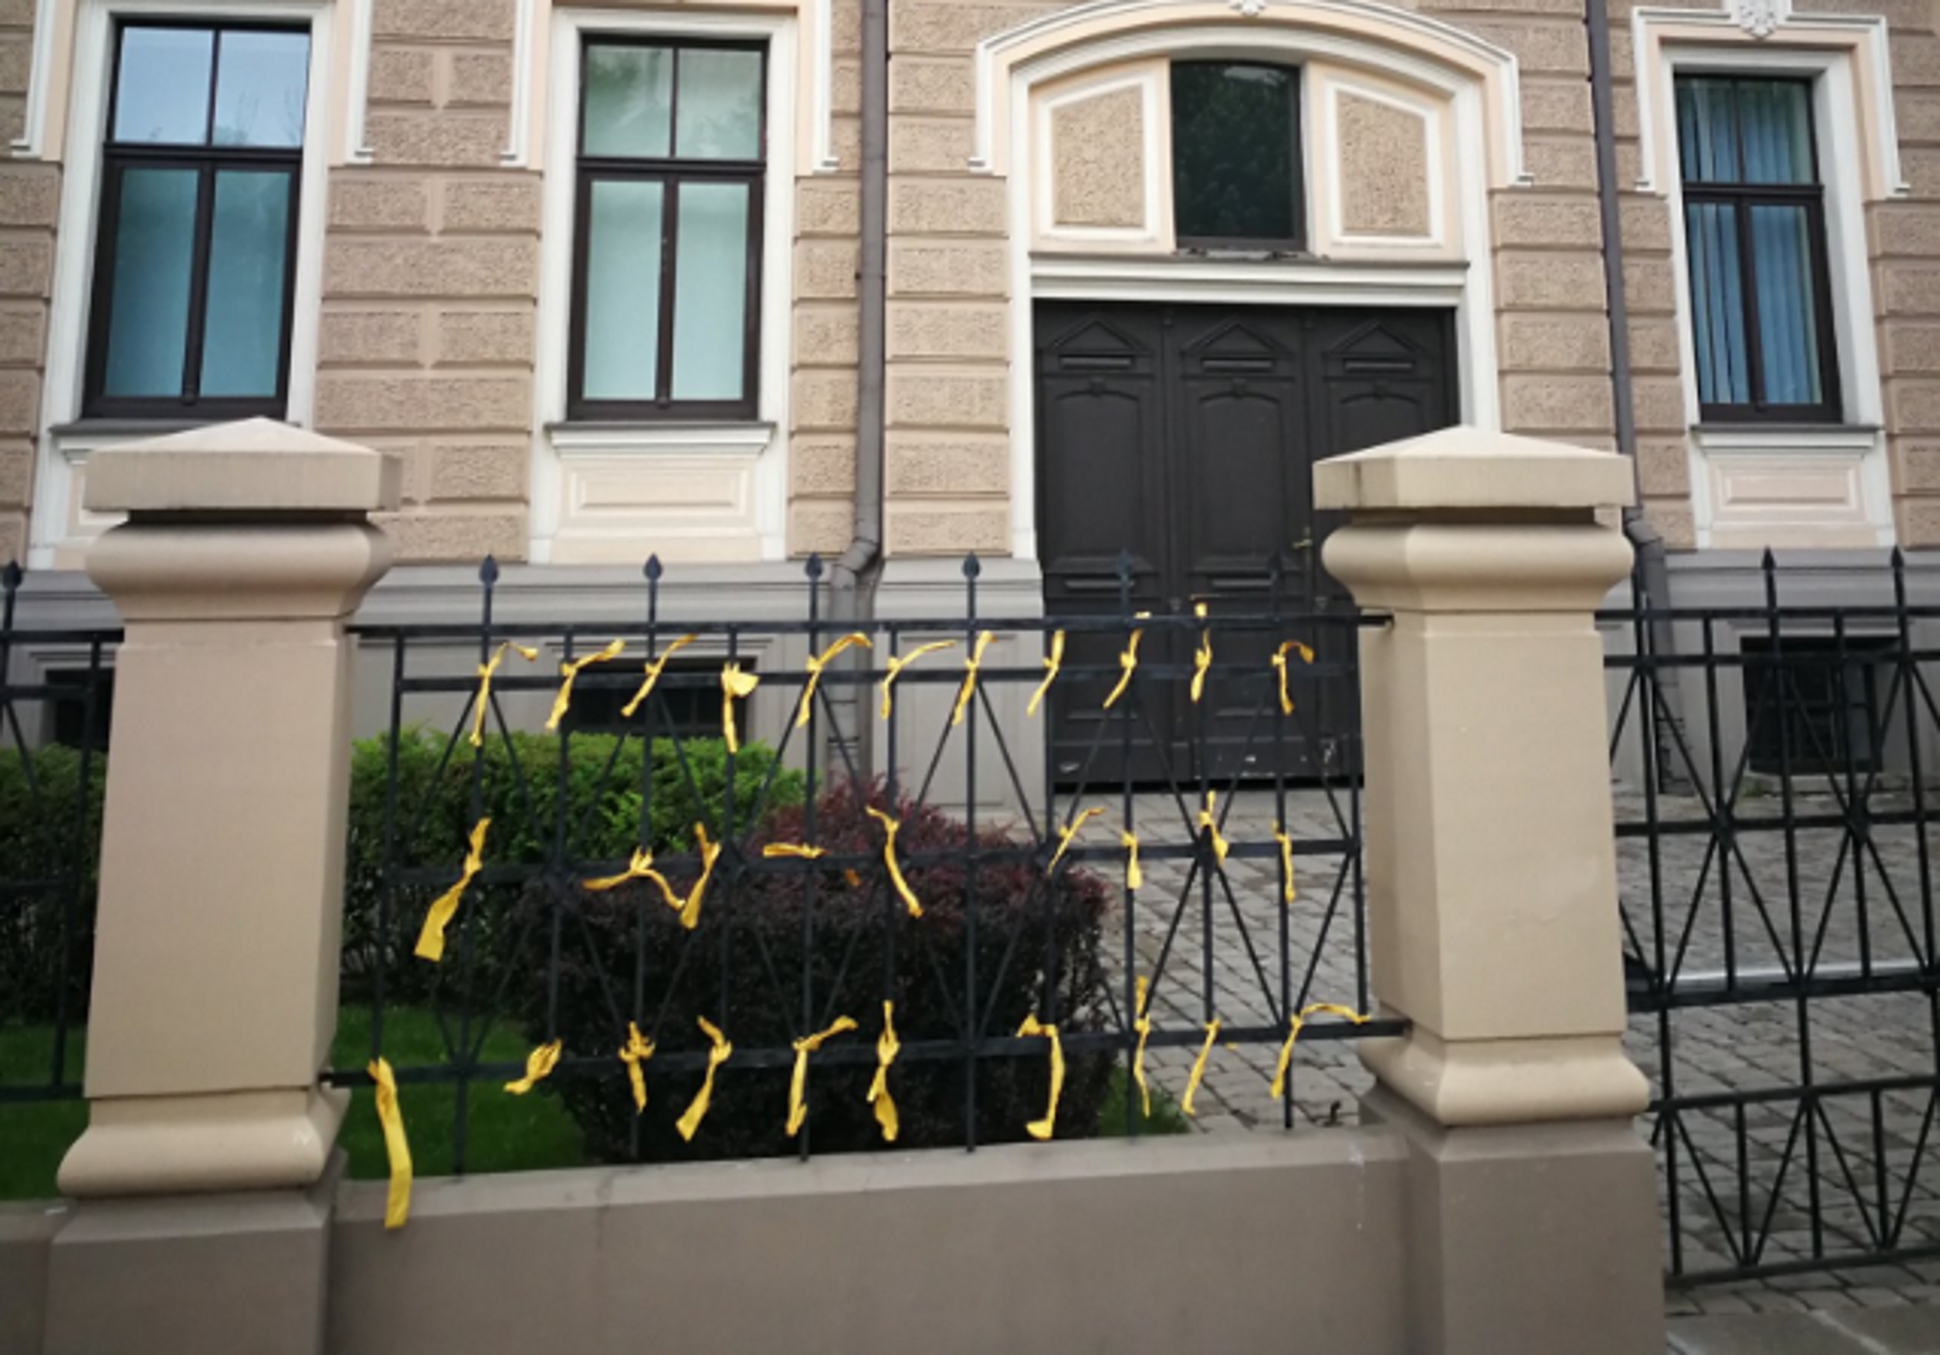 Aparecen lazos amarillos en la embajada española en Letonia